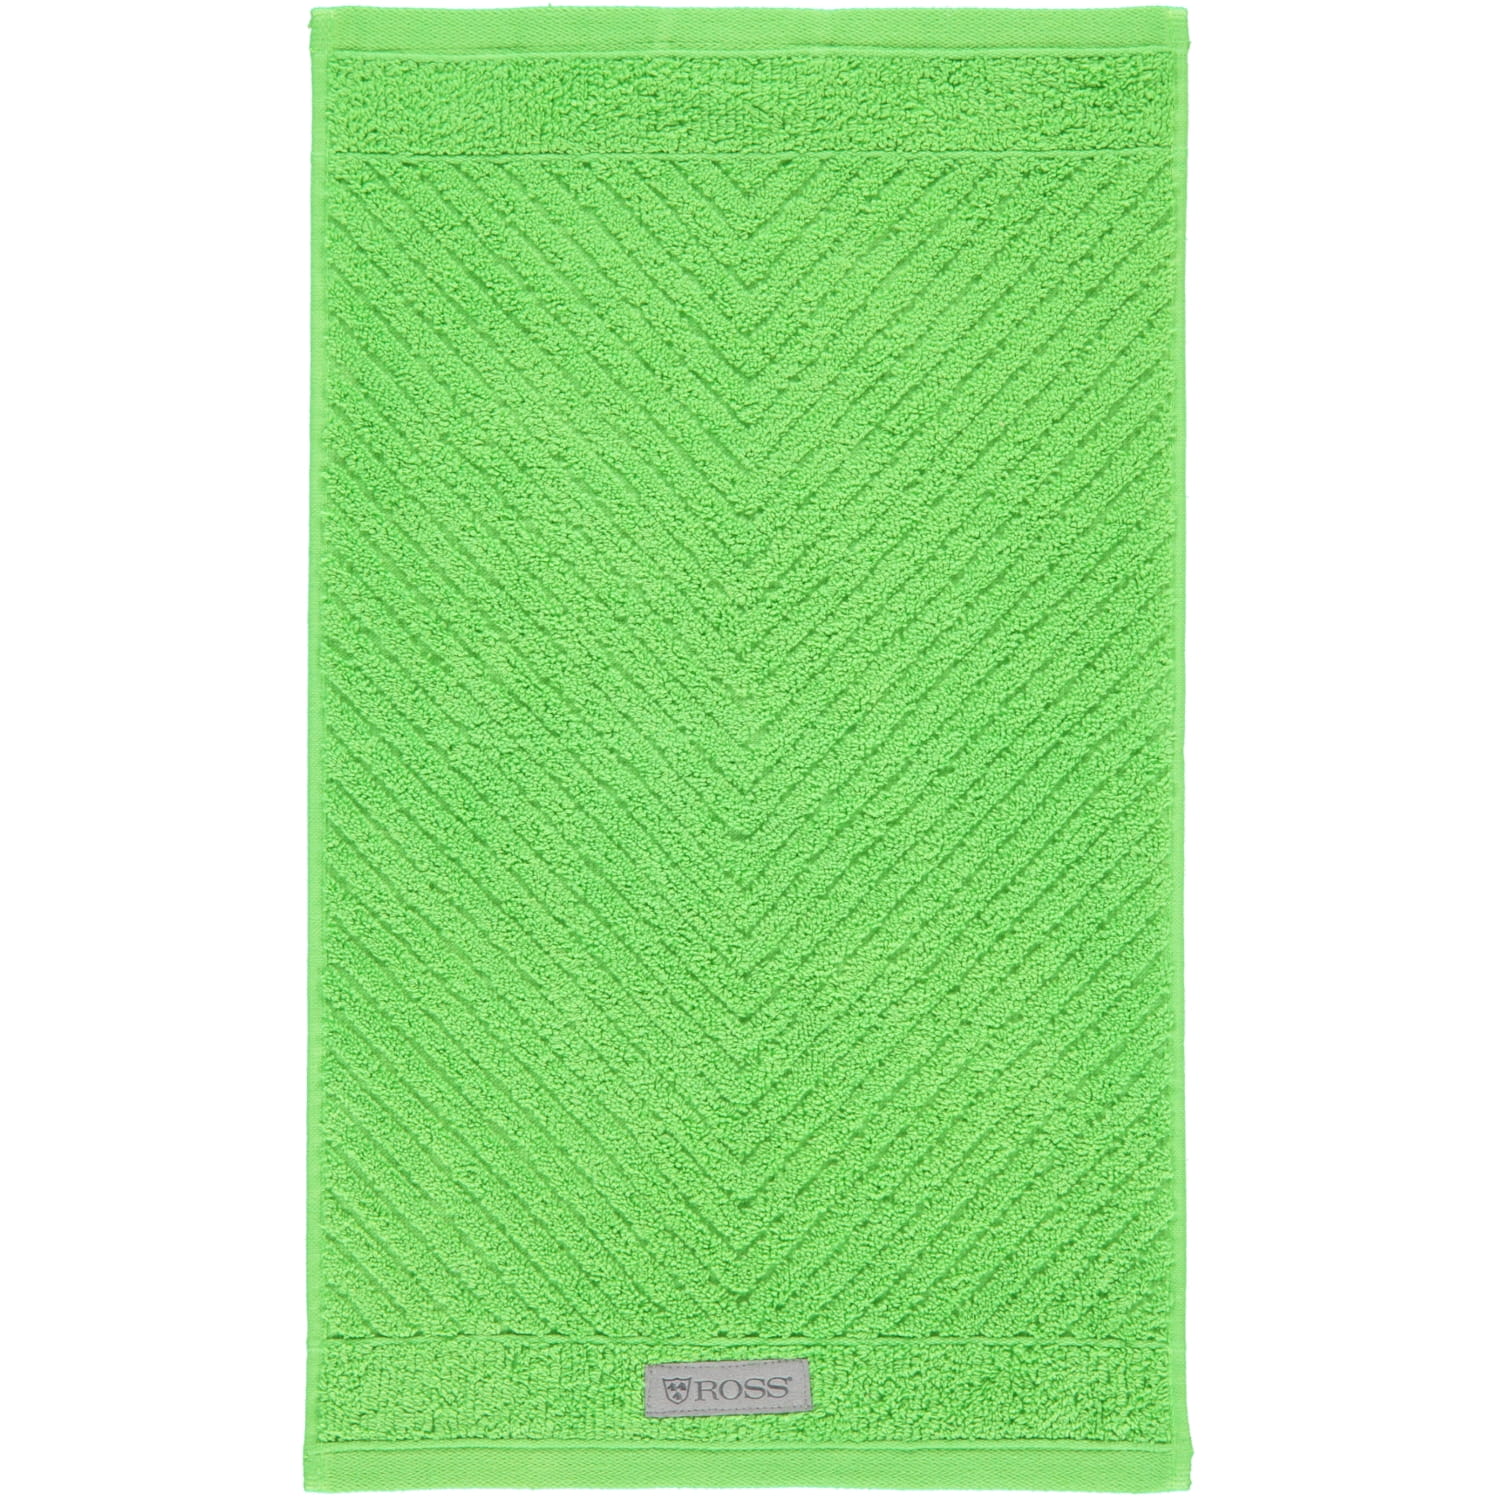 Ross | Ross | 4006 36 | Ross Marken Smart - Farbe: grasgrün Handtücher -